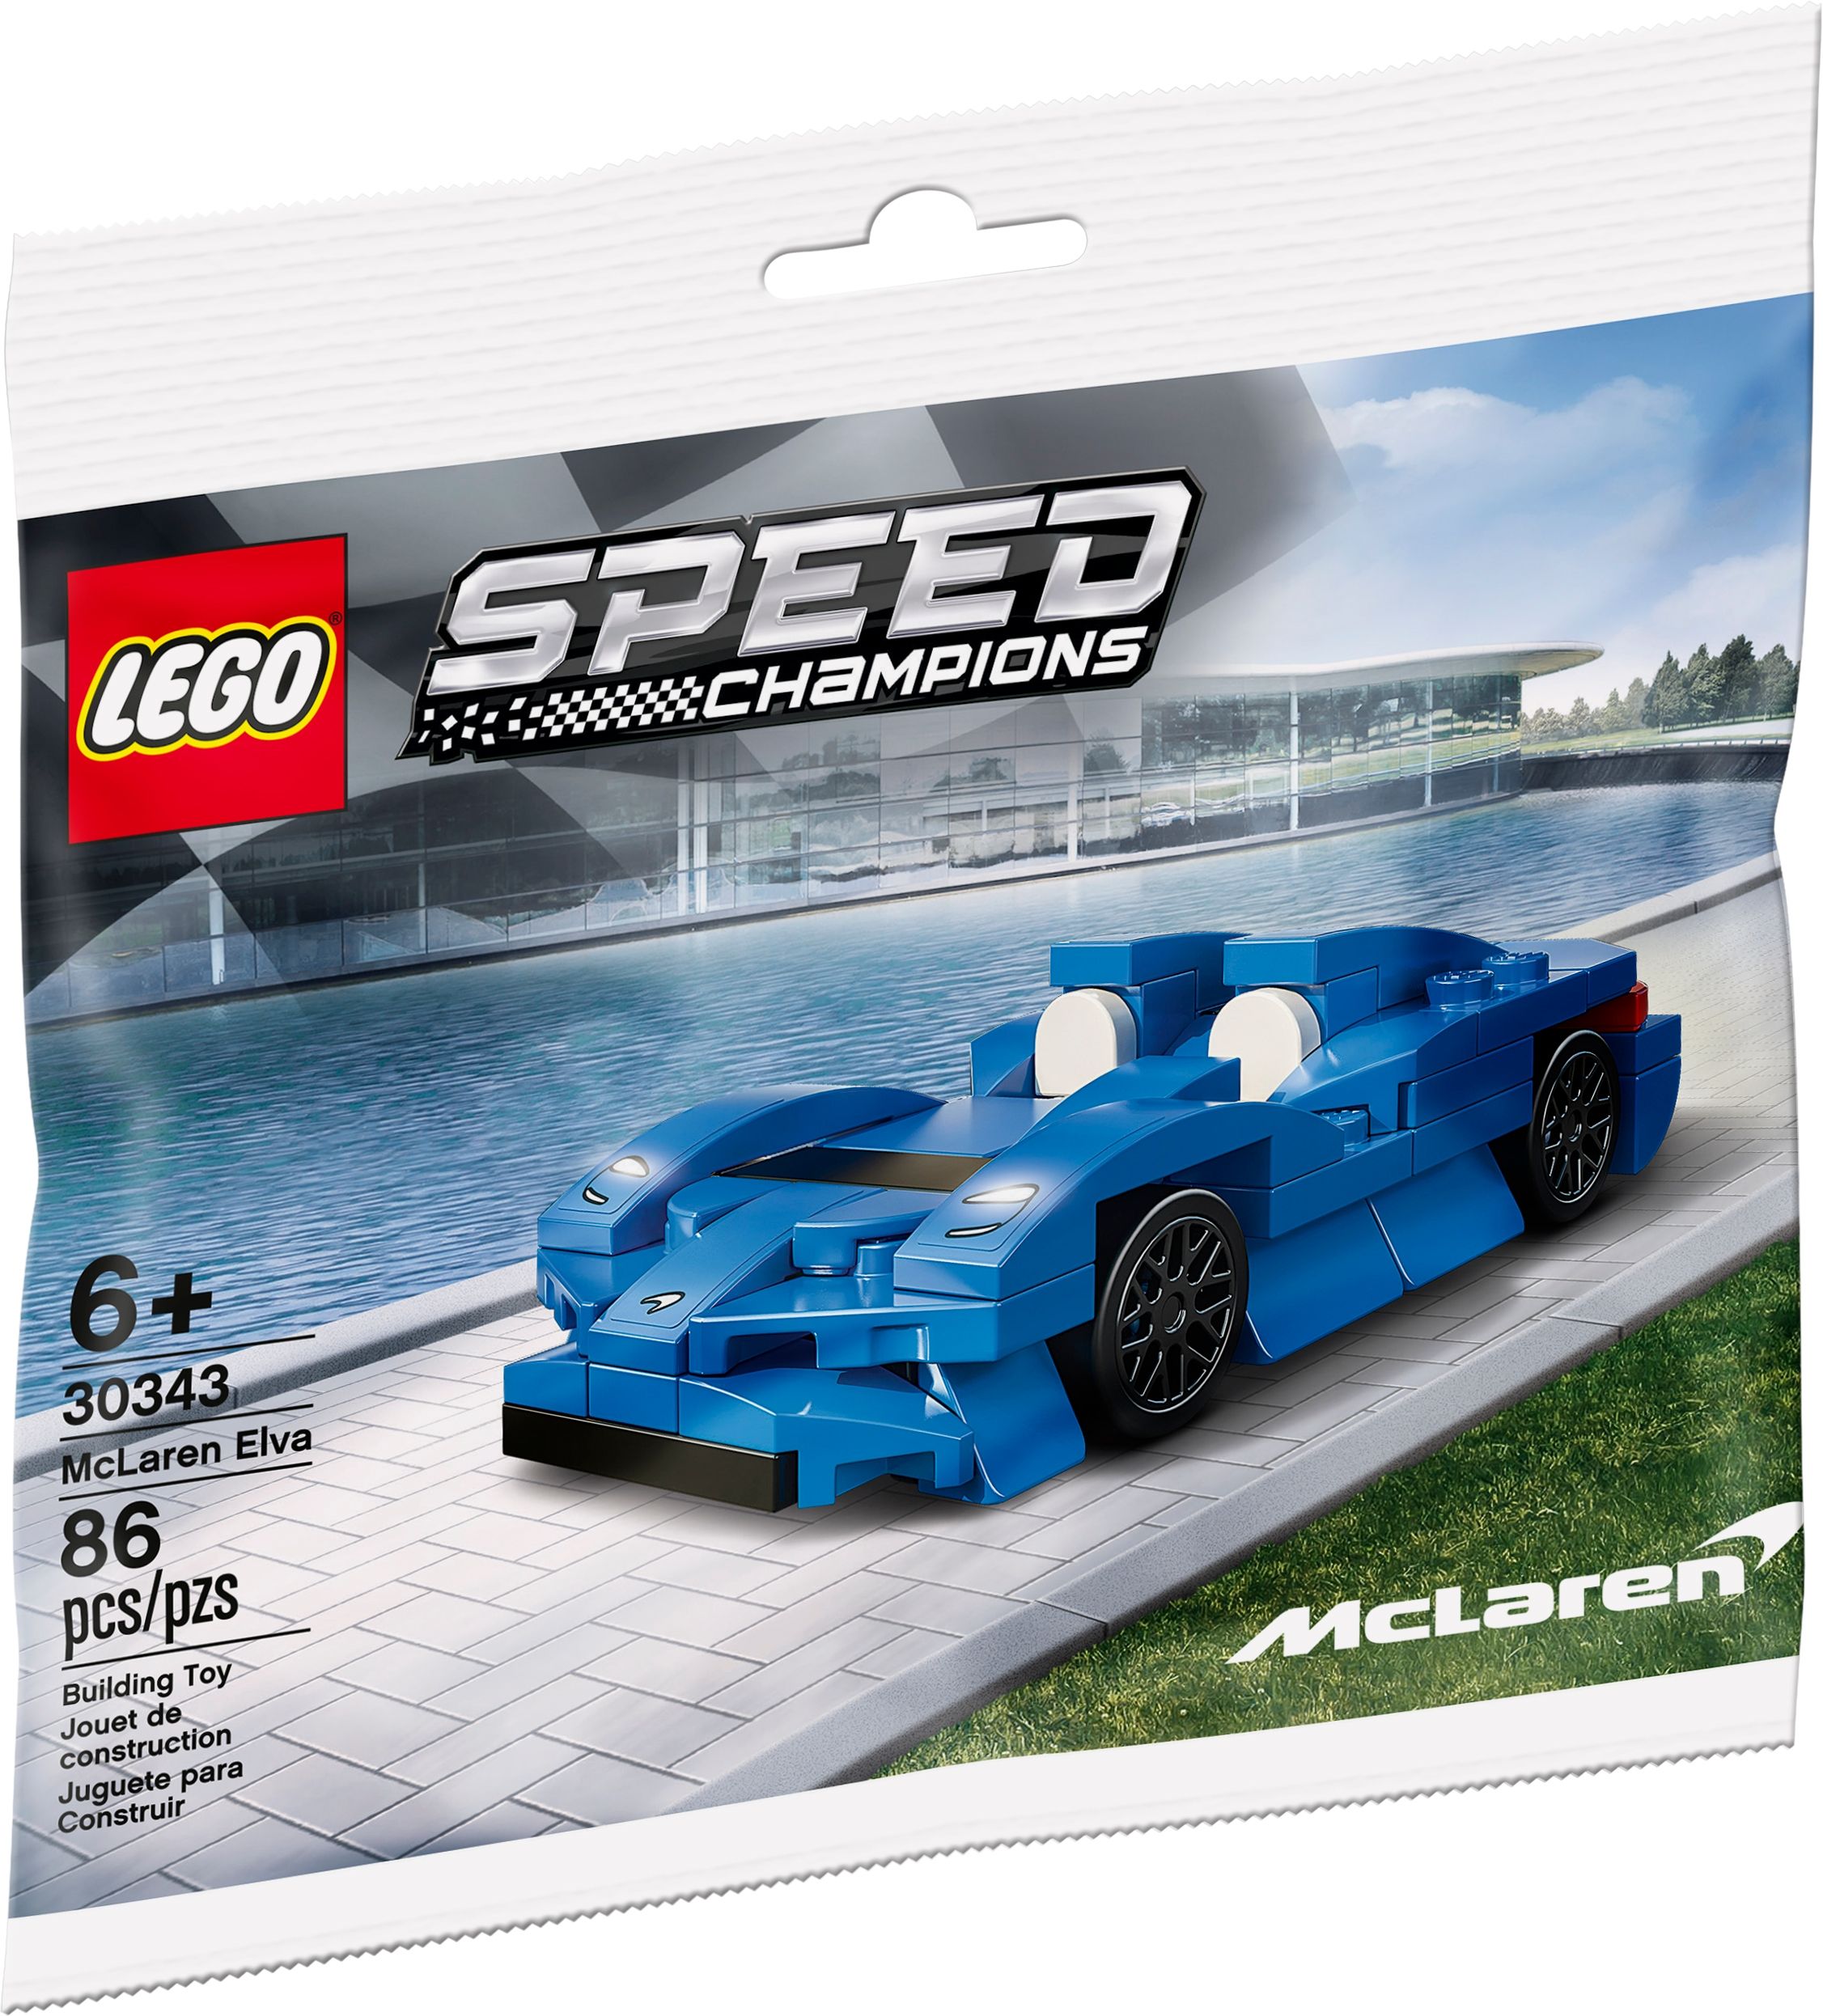 LEGO Miscellaneous 30343 McLaren Elva LEGO_30343_alt1.jpg